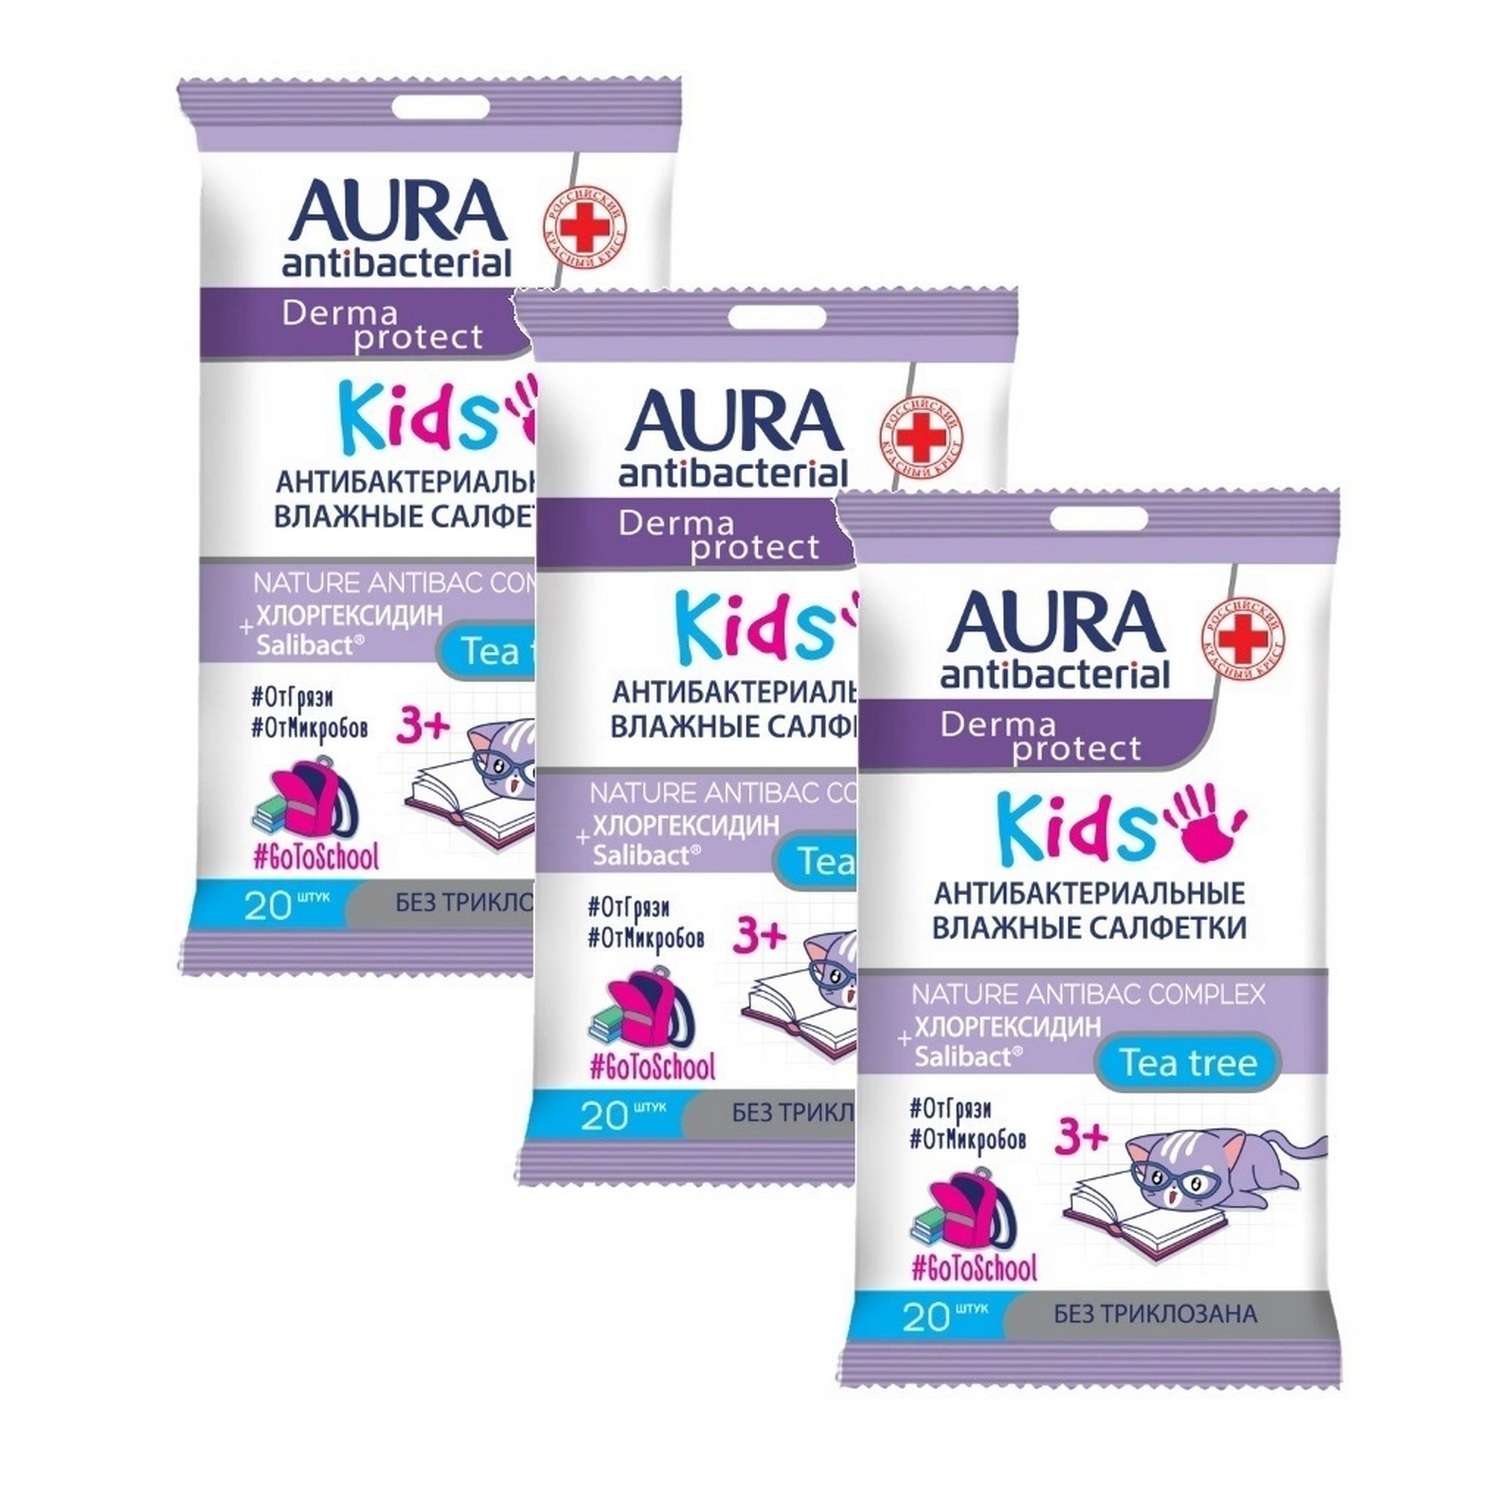 Влажные салфетки AURA Antibacterial Derma protect kids детские 3+ pocket-pack 20шт х 2 + 1 в подарок - фото 1